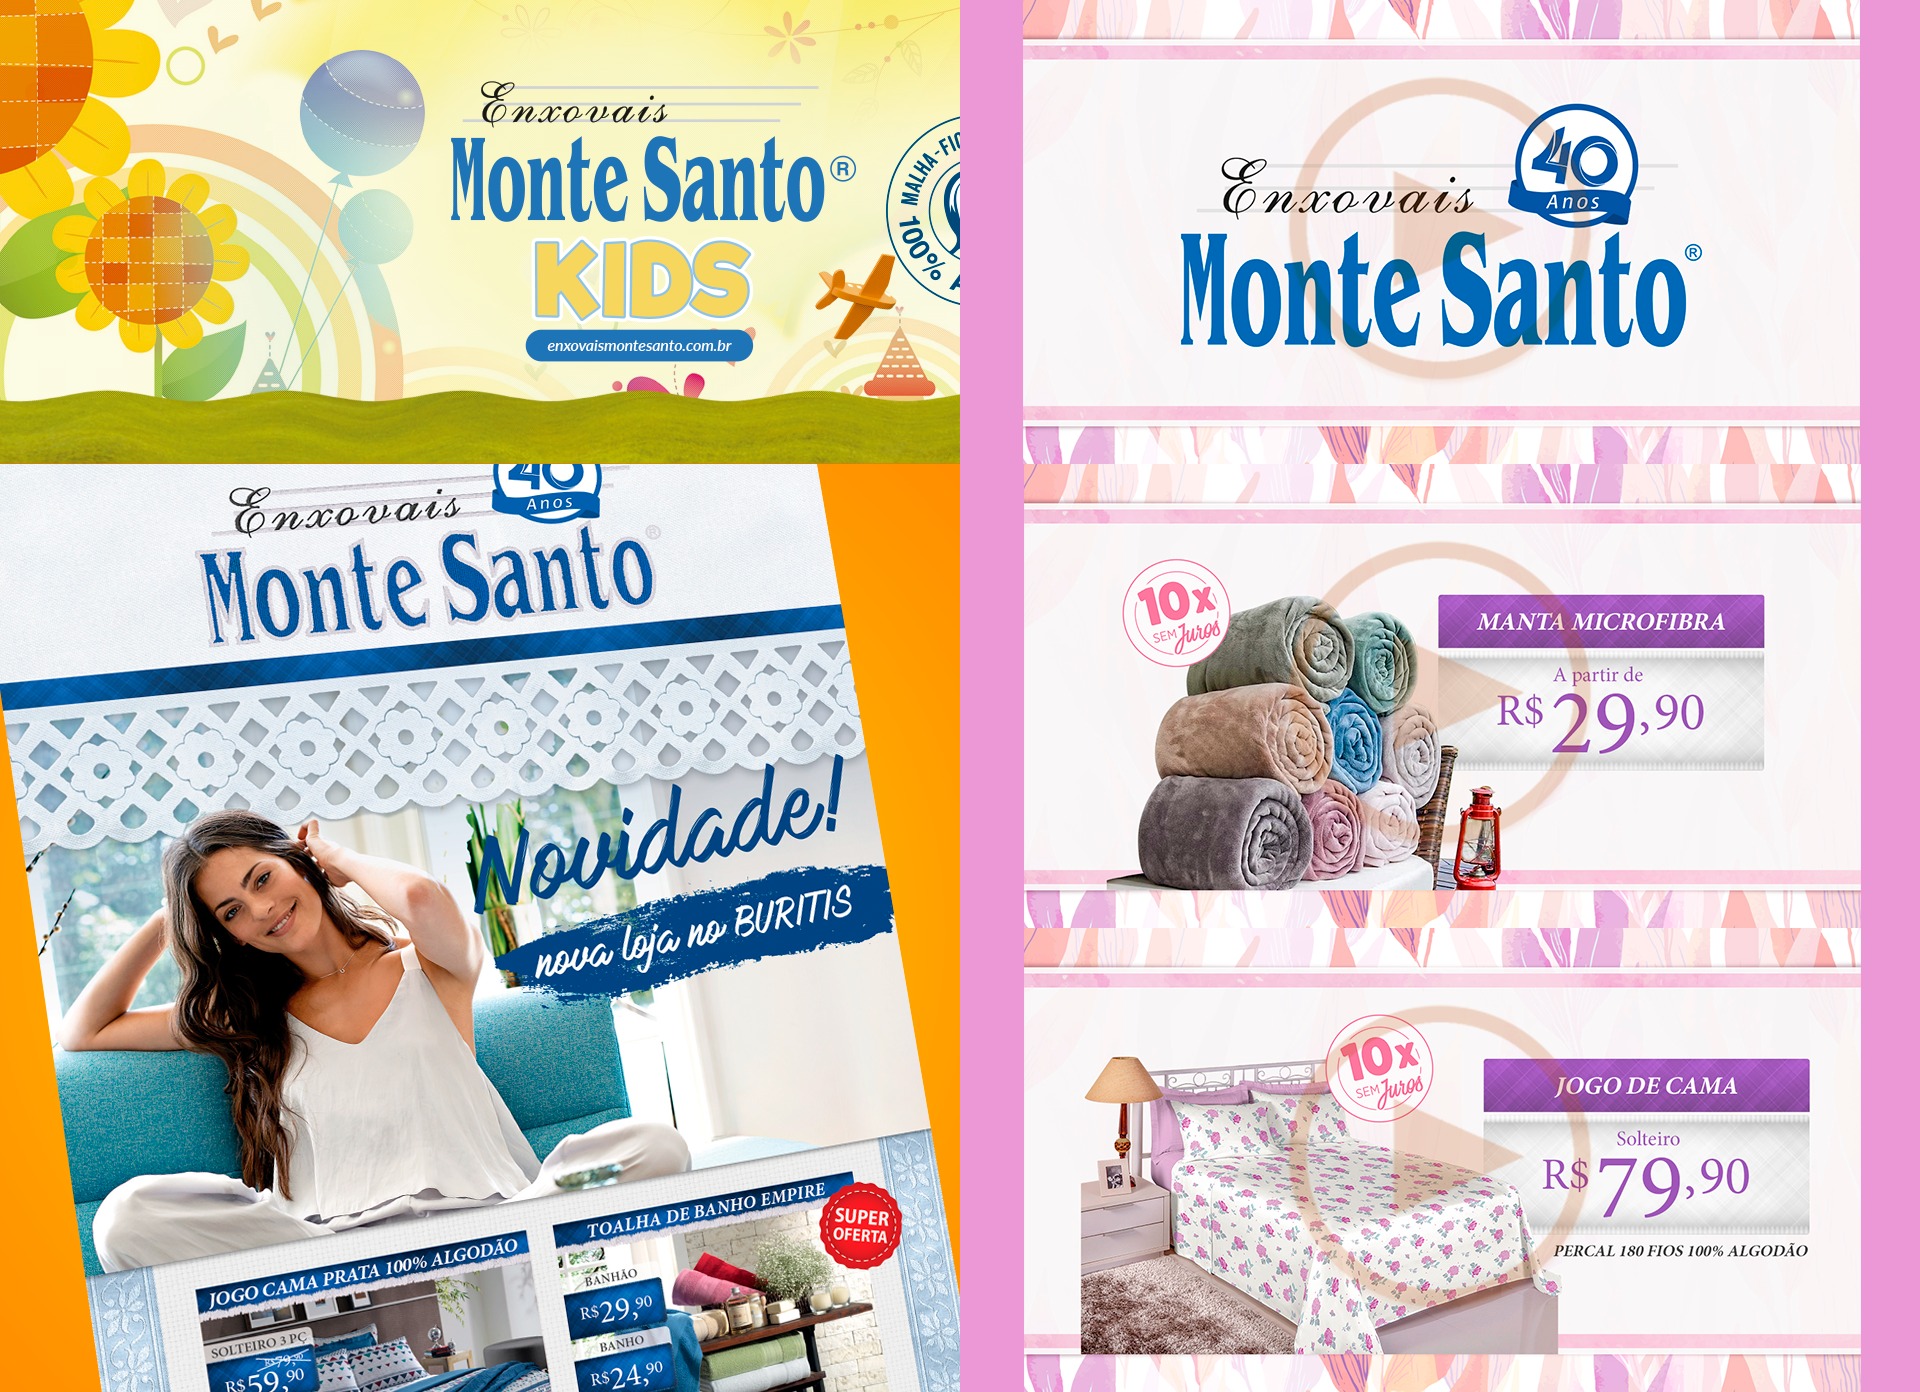 Portfólio Monte Santo - Galpão33: Agência de Publicidade e Comunicação